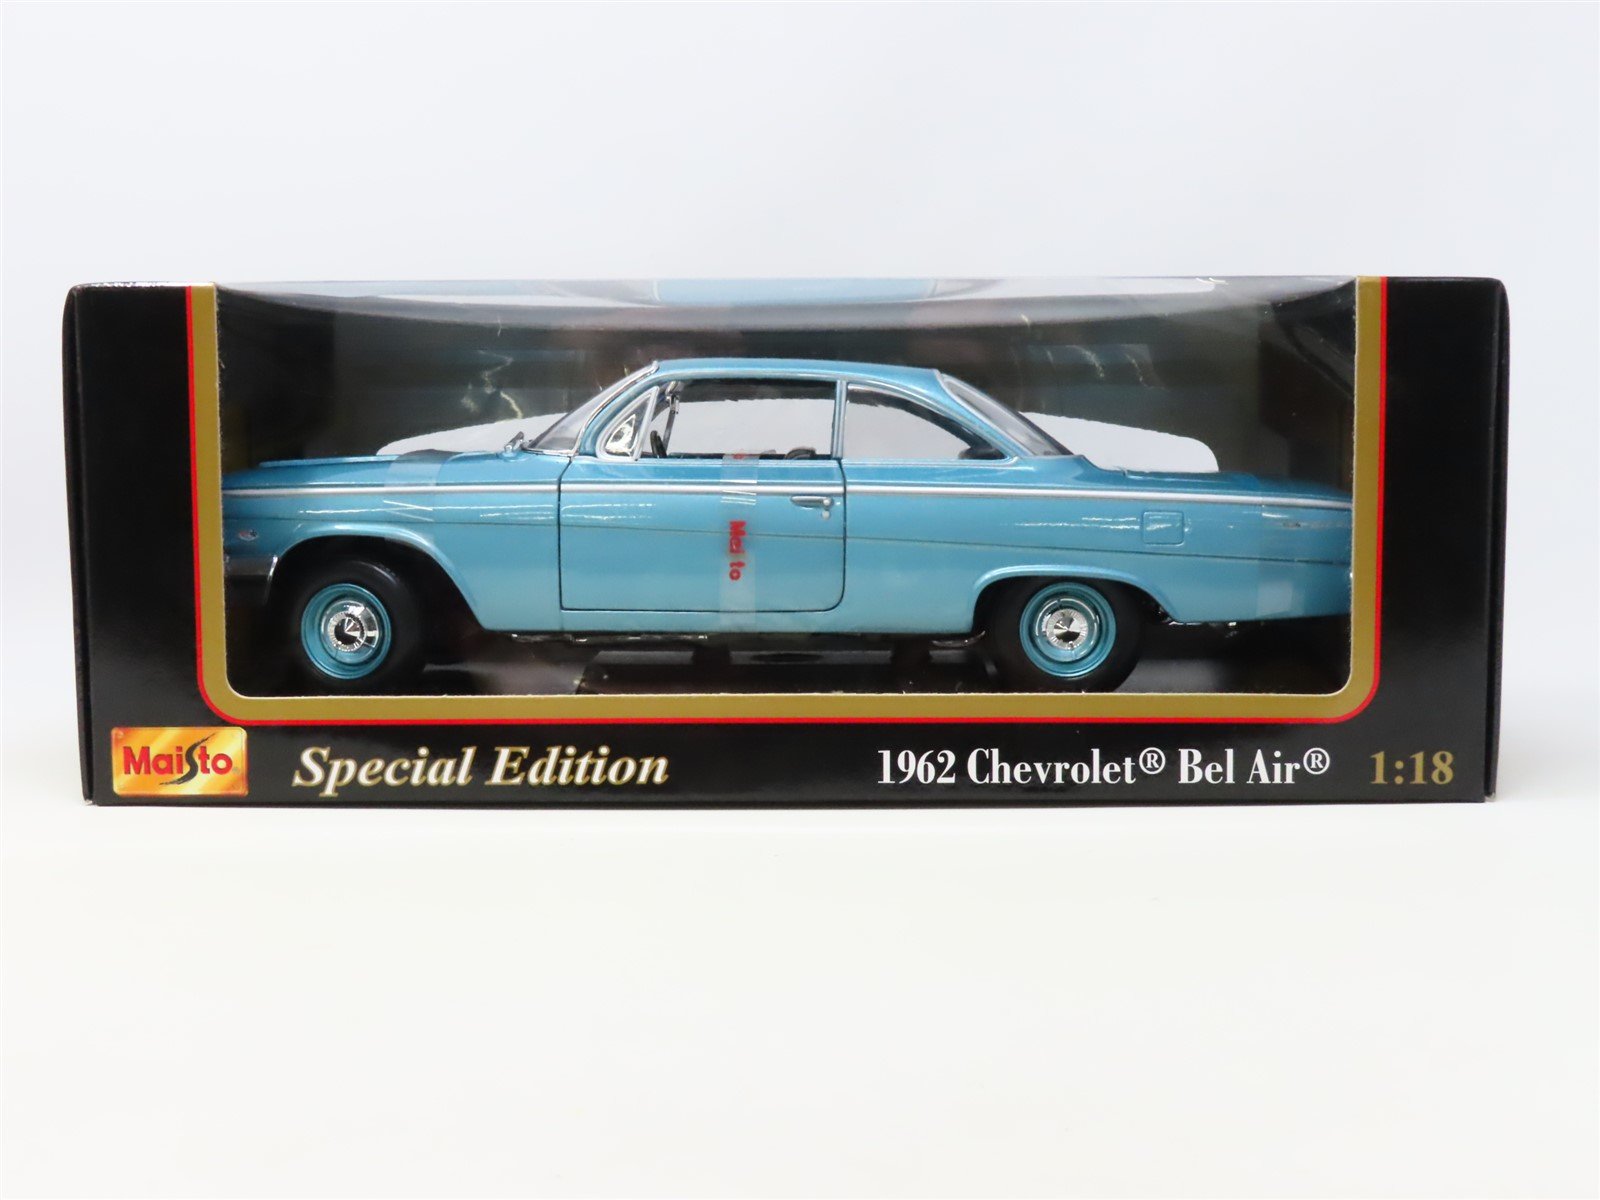 1:18 Scale Maisto #31641 Die-Cast Model Car - 1962 Aqua Chevrolet 